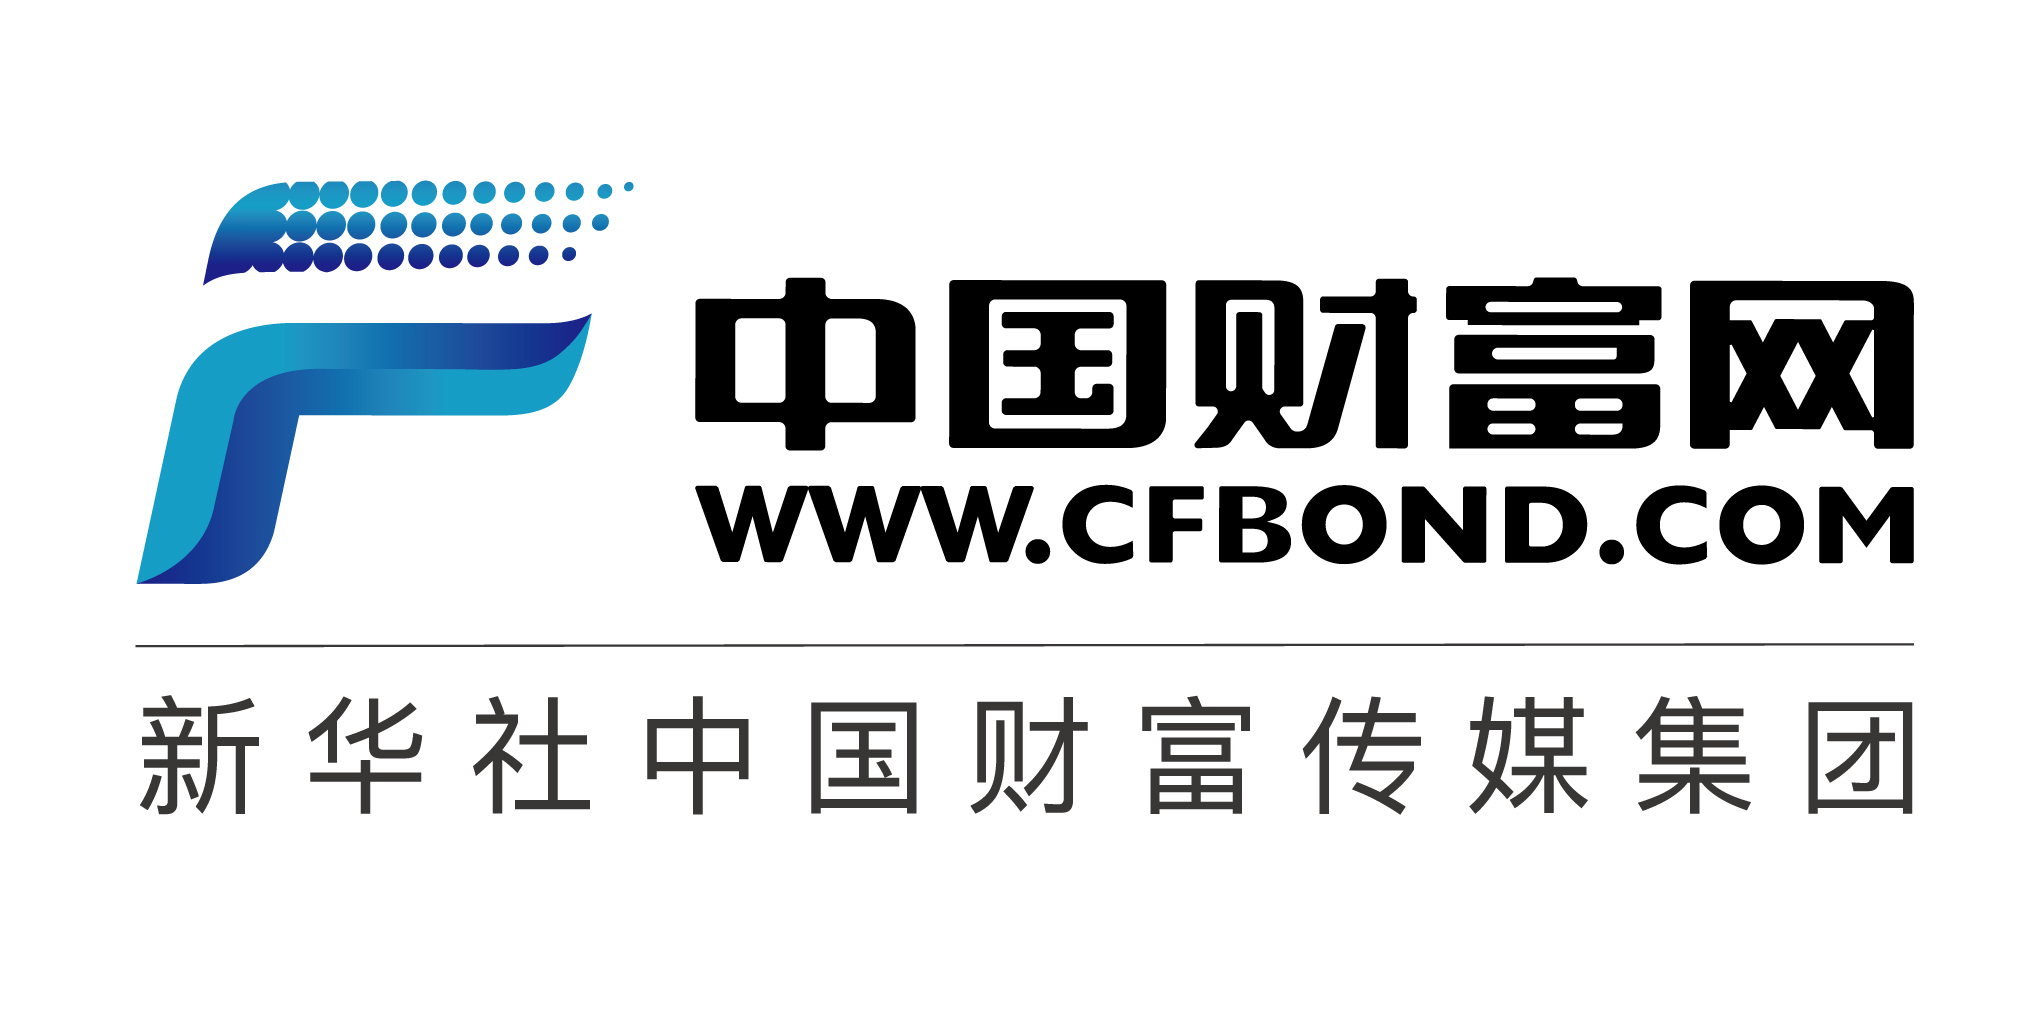 首席合作媒体-中国财富网logo.jpg